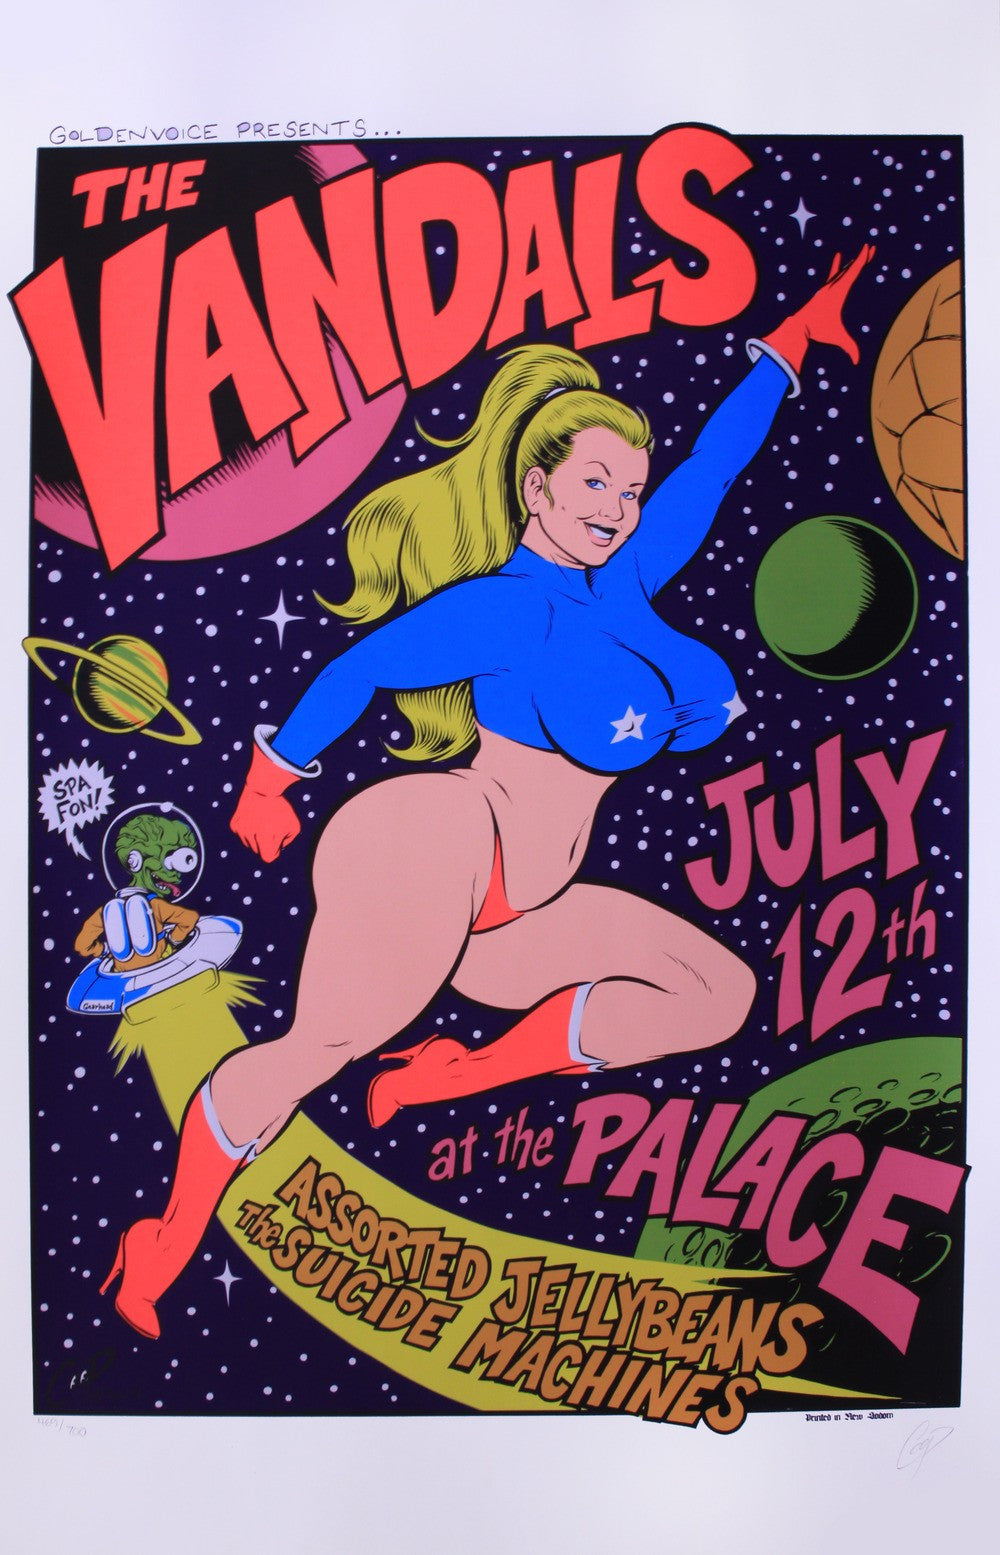 Coop - 1996 - Vandals Concert Poster